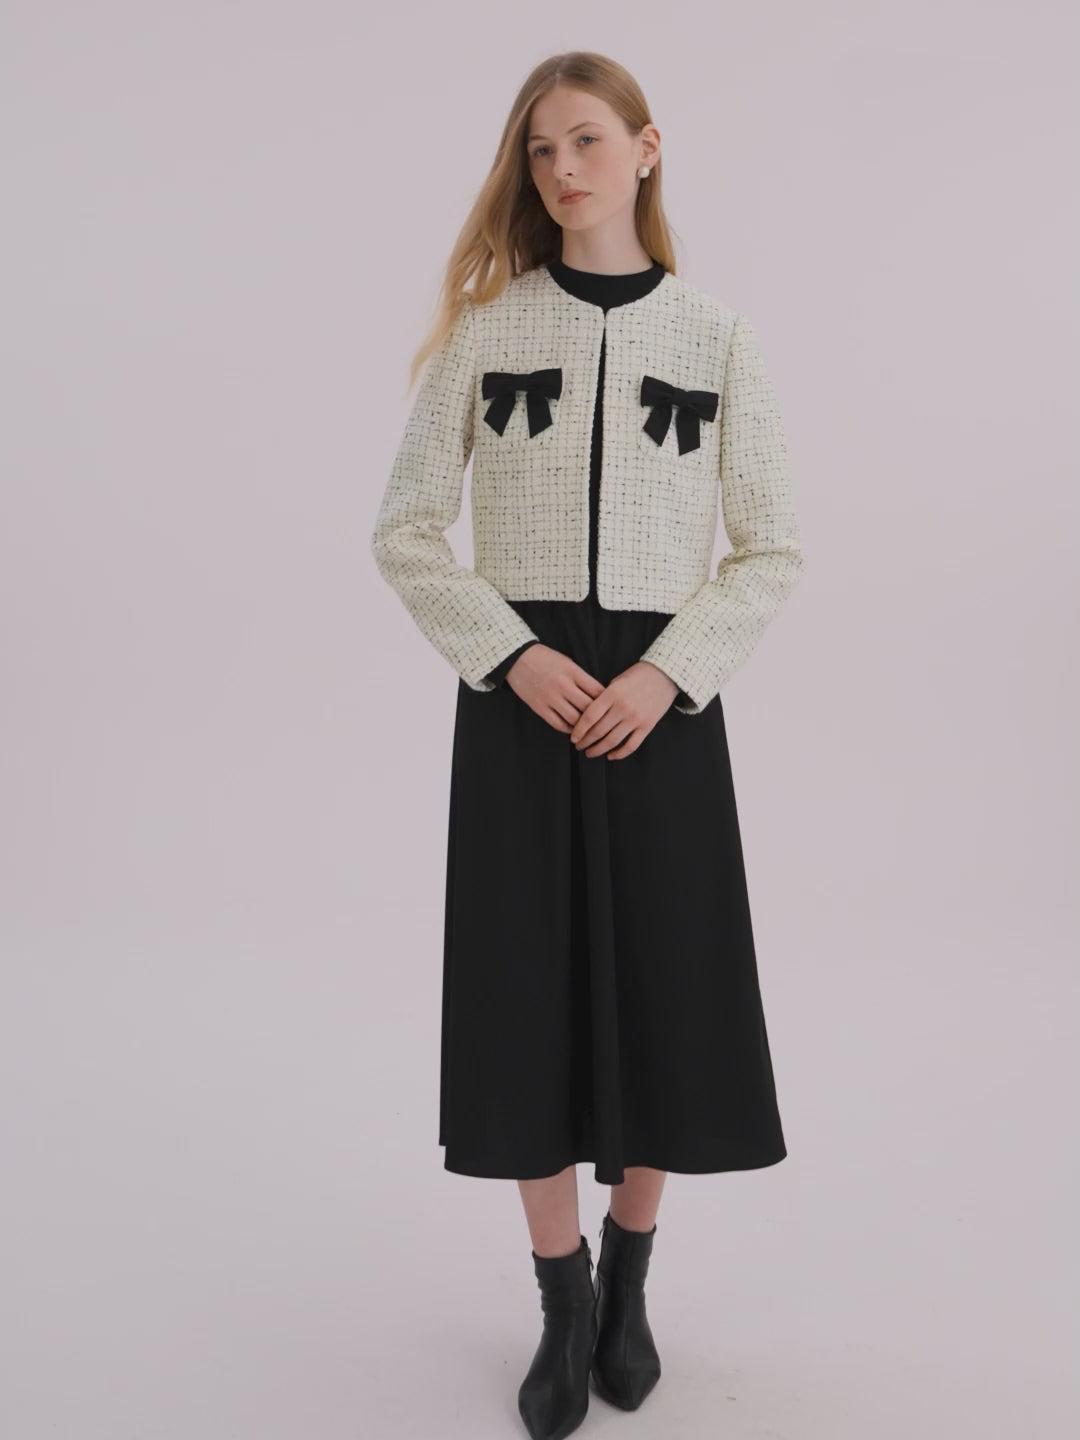 Wool Blend Tweed Short Women Jacket And Long Sleeve Dress Set – GOELIA